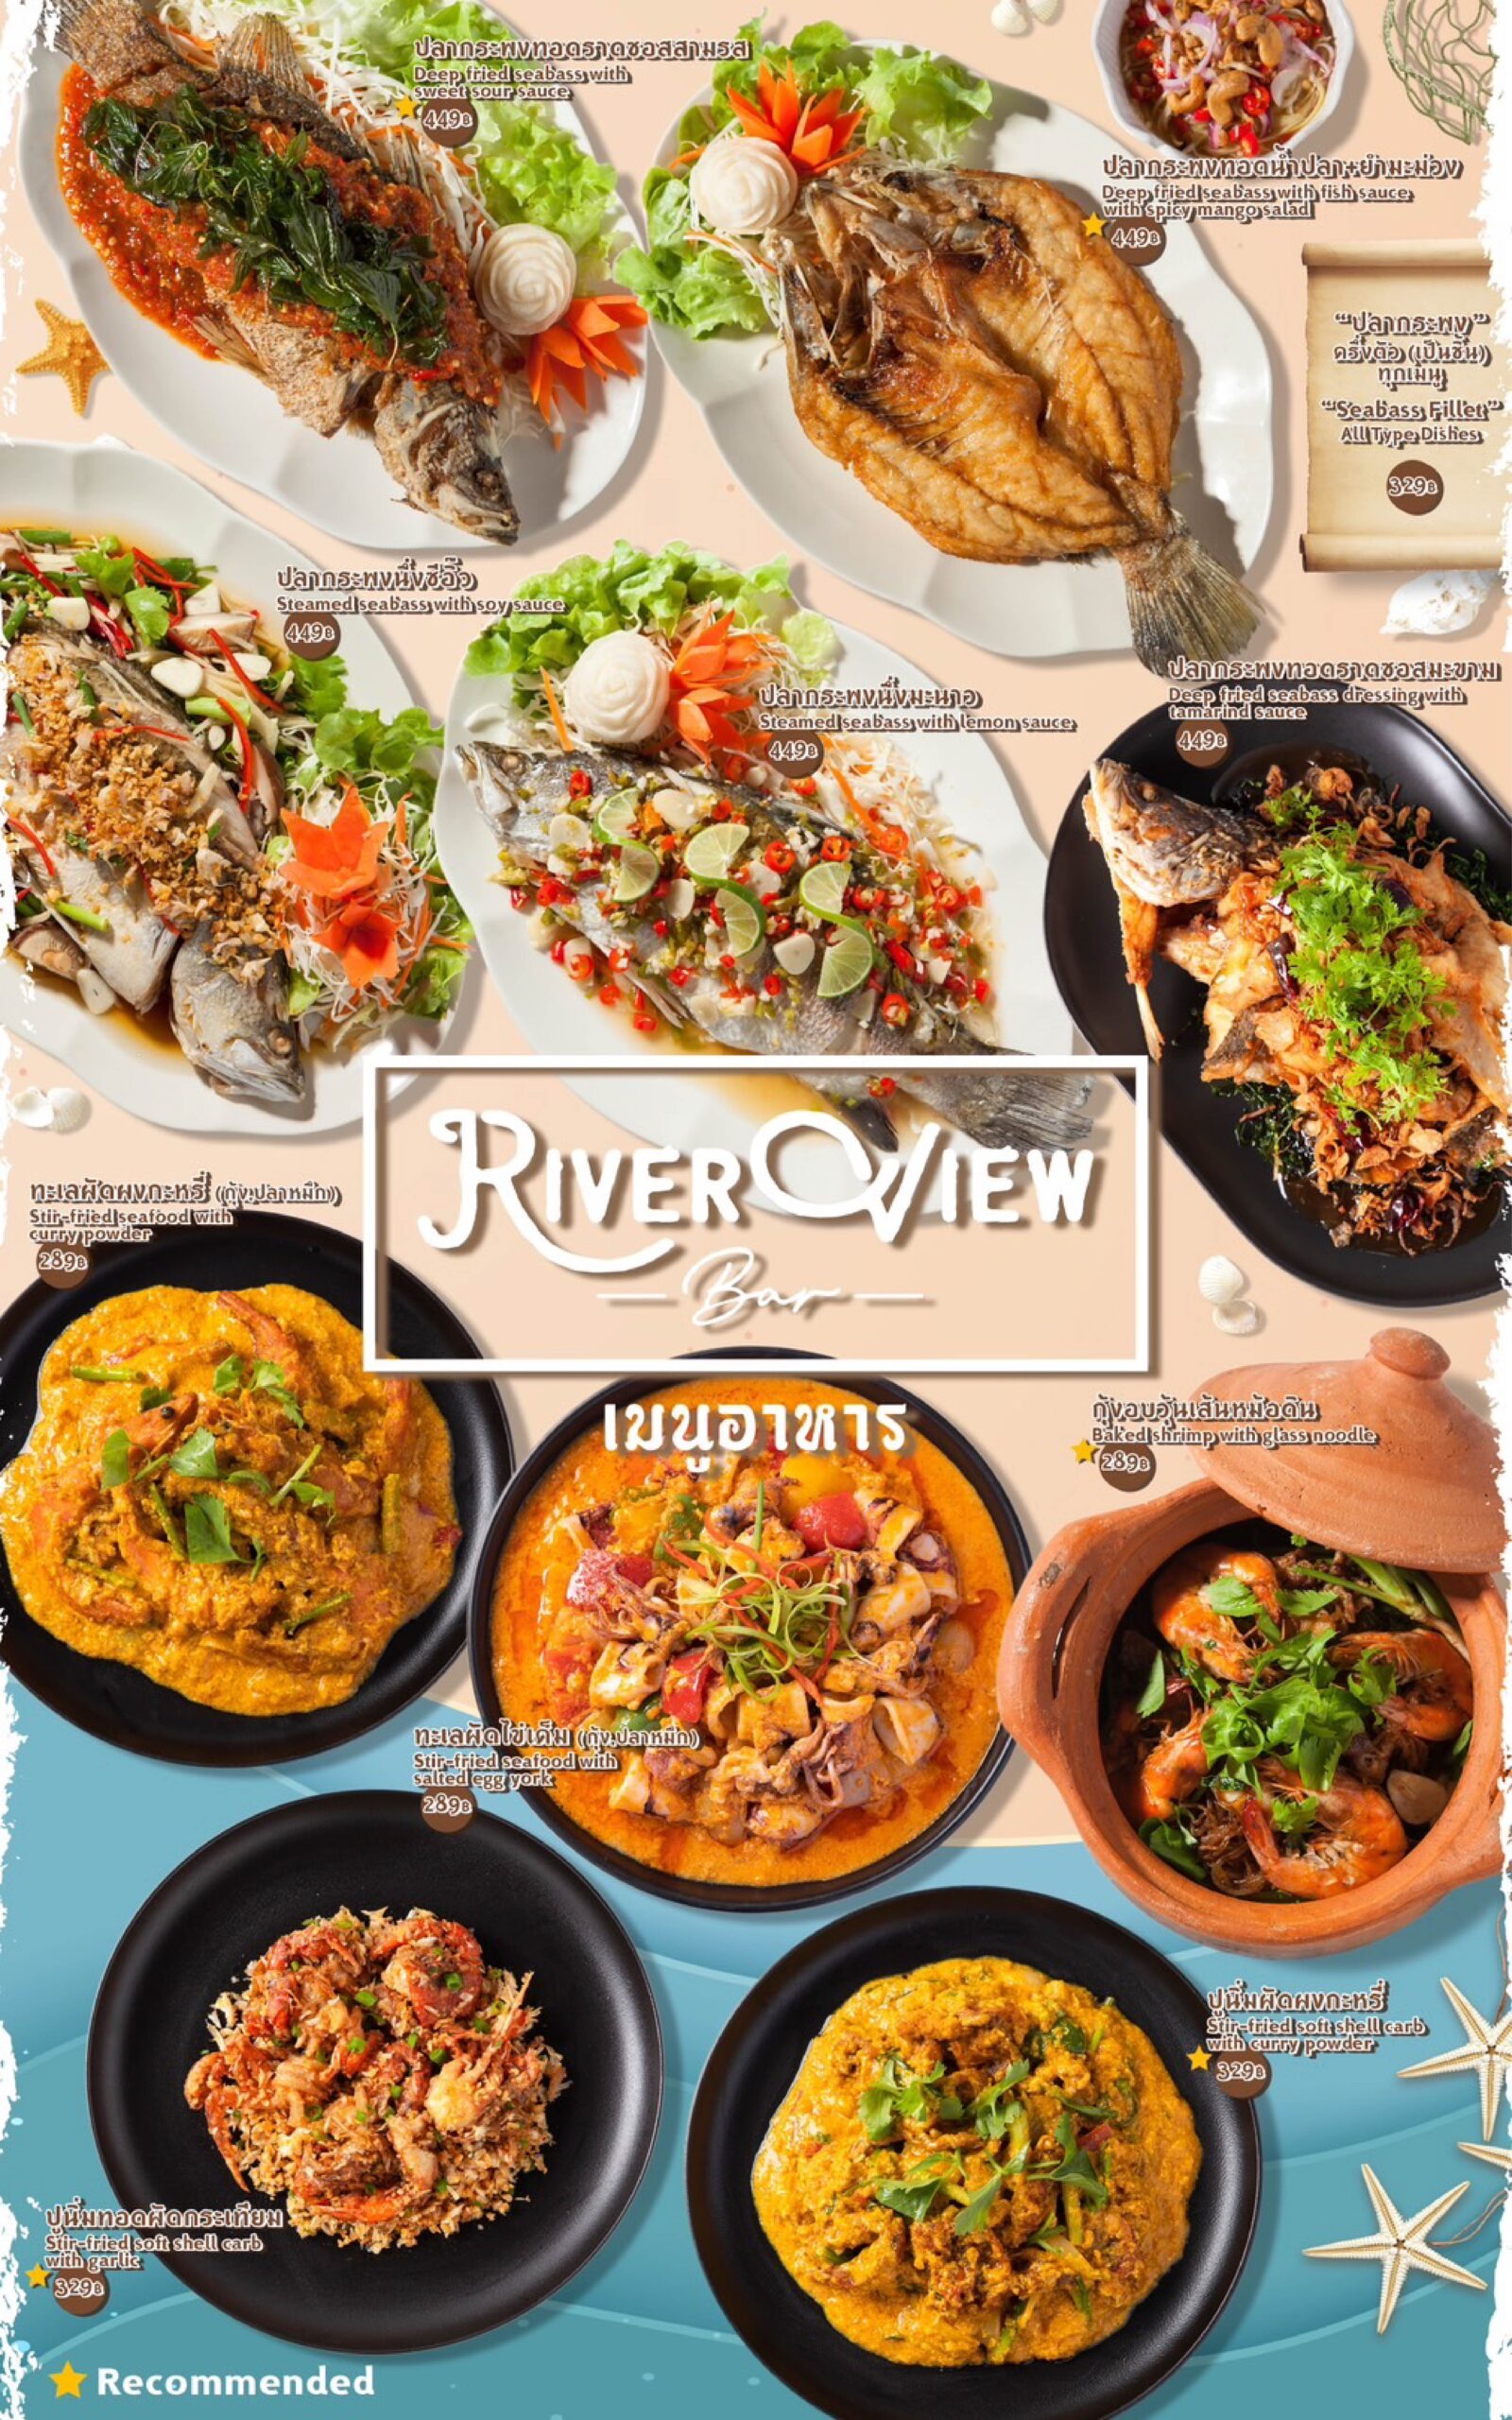 ร้านอาหารริมแม่น้ำปิง เชียงใหม่ river view bar chiangmai